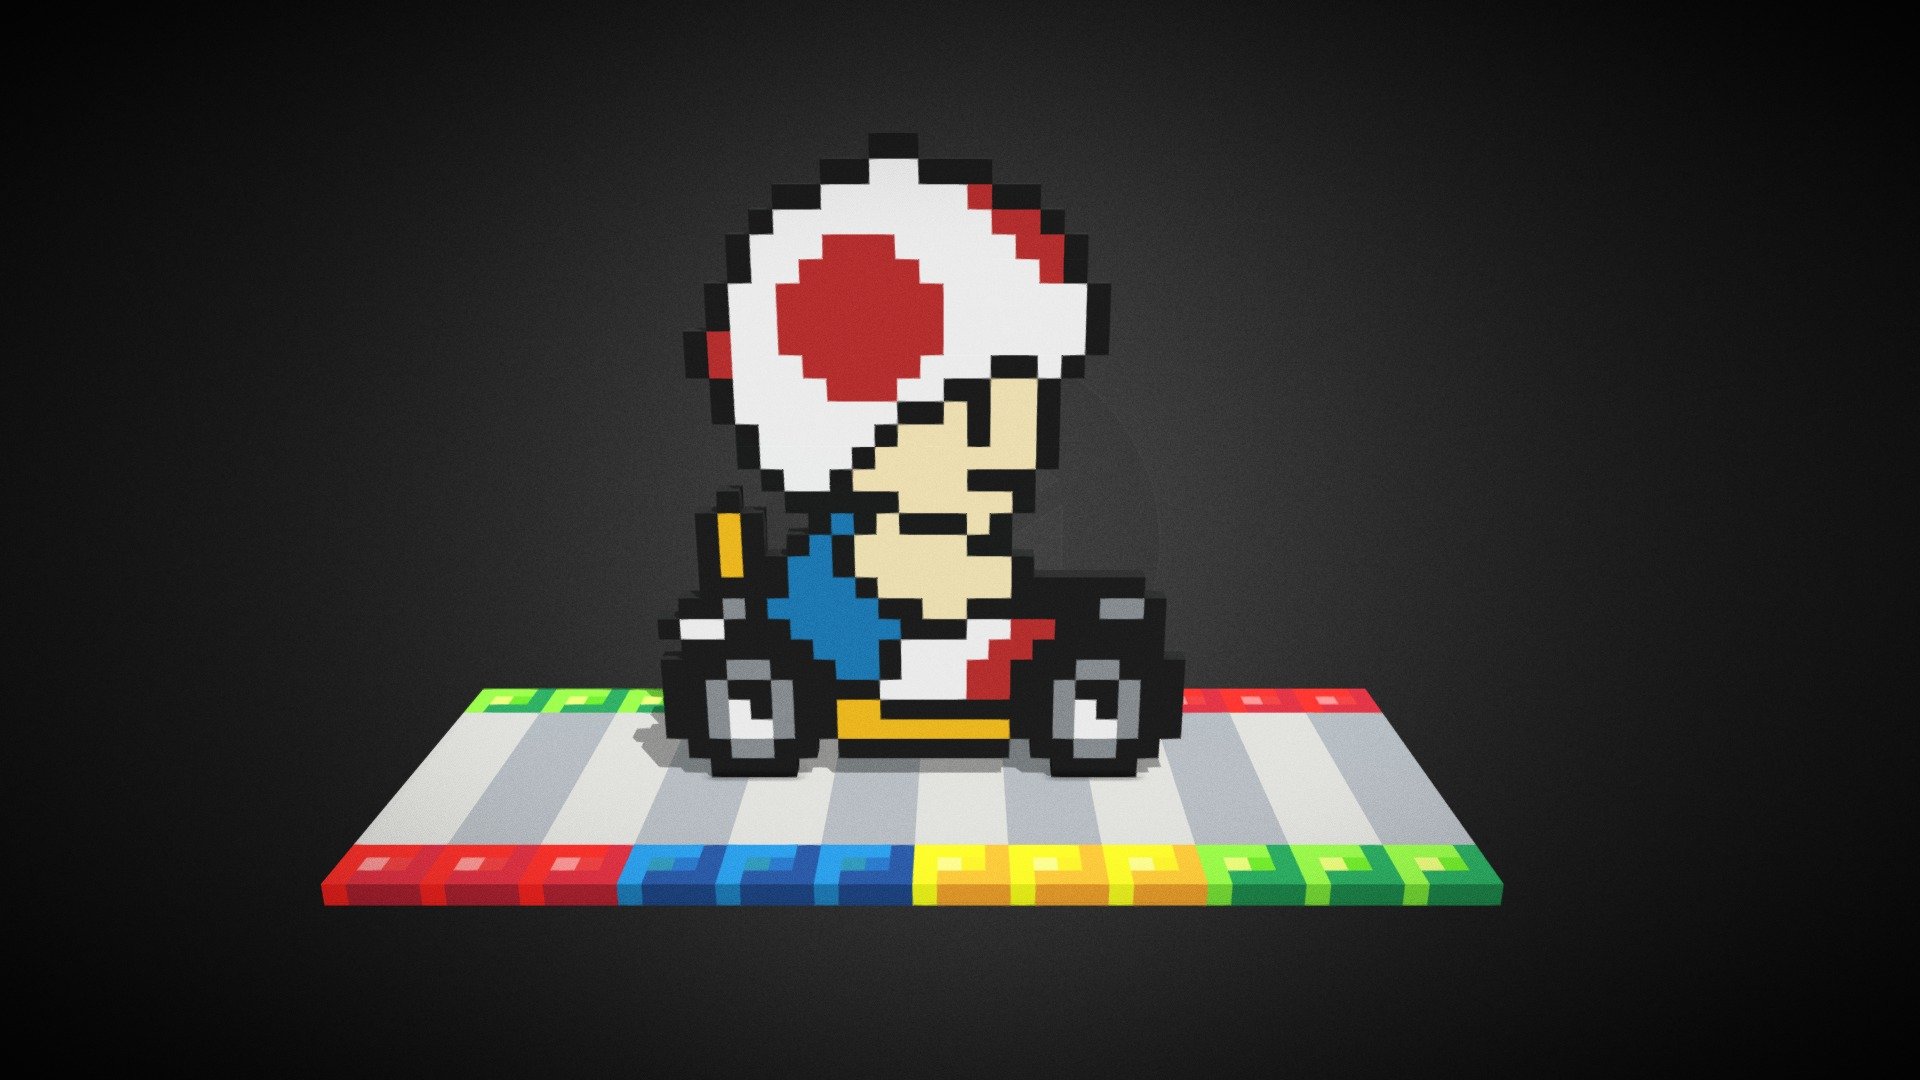 Smk008 Super Mario Kart Toad Buy Royalty Free 3d Model By Código Píxel Codigopixel 6441